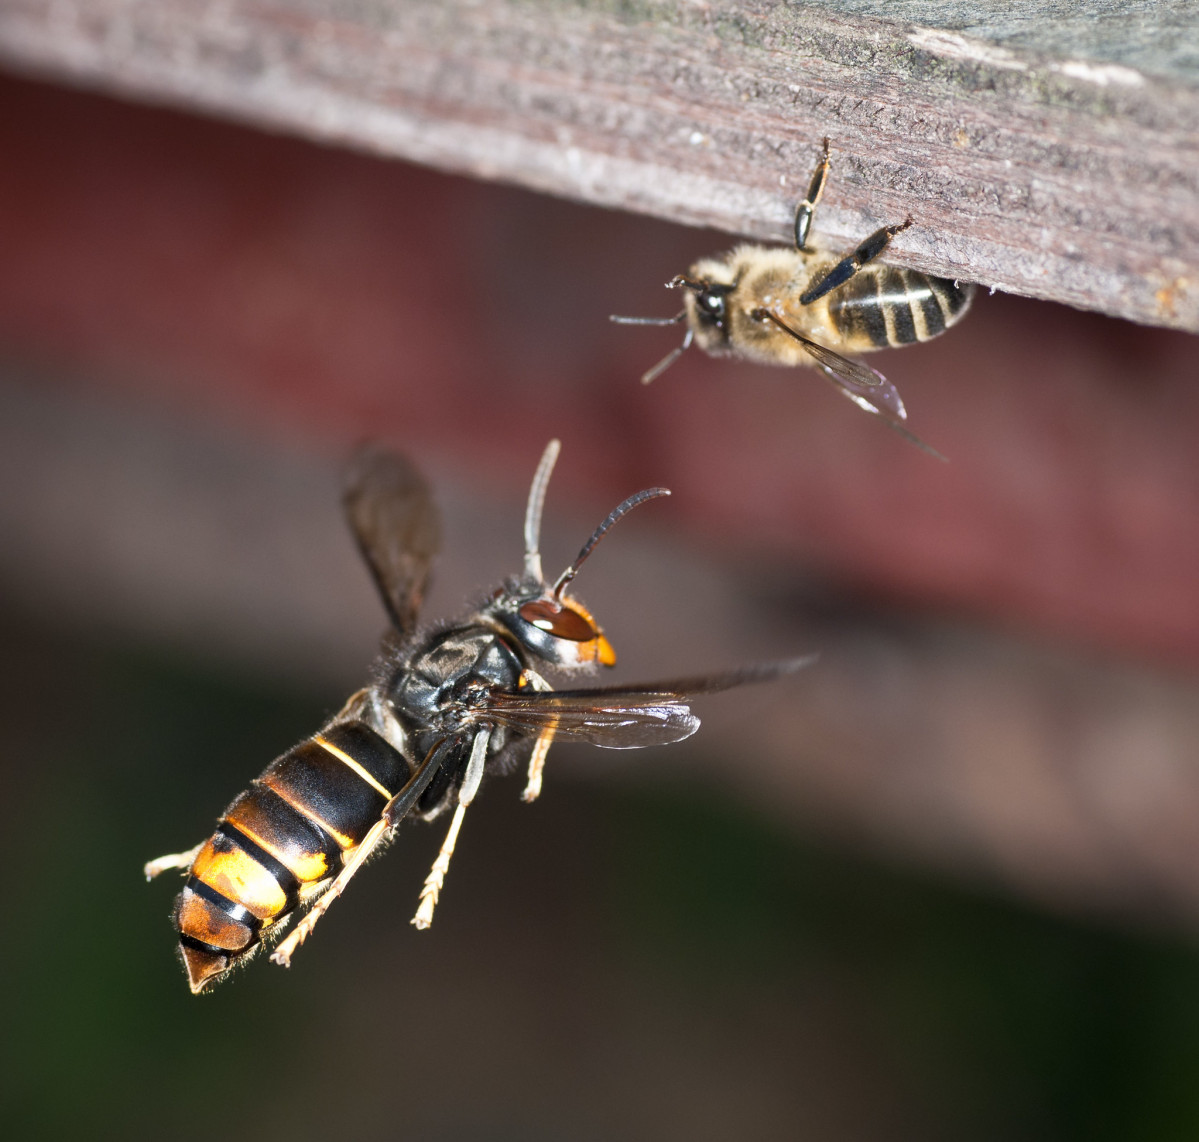 Vespa velutina atacando abeja en una foto de Danel Solabarrieta publicada en su Flickr bajo licencia Creative Commons